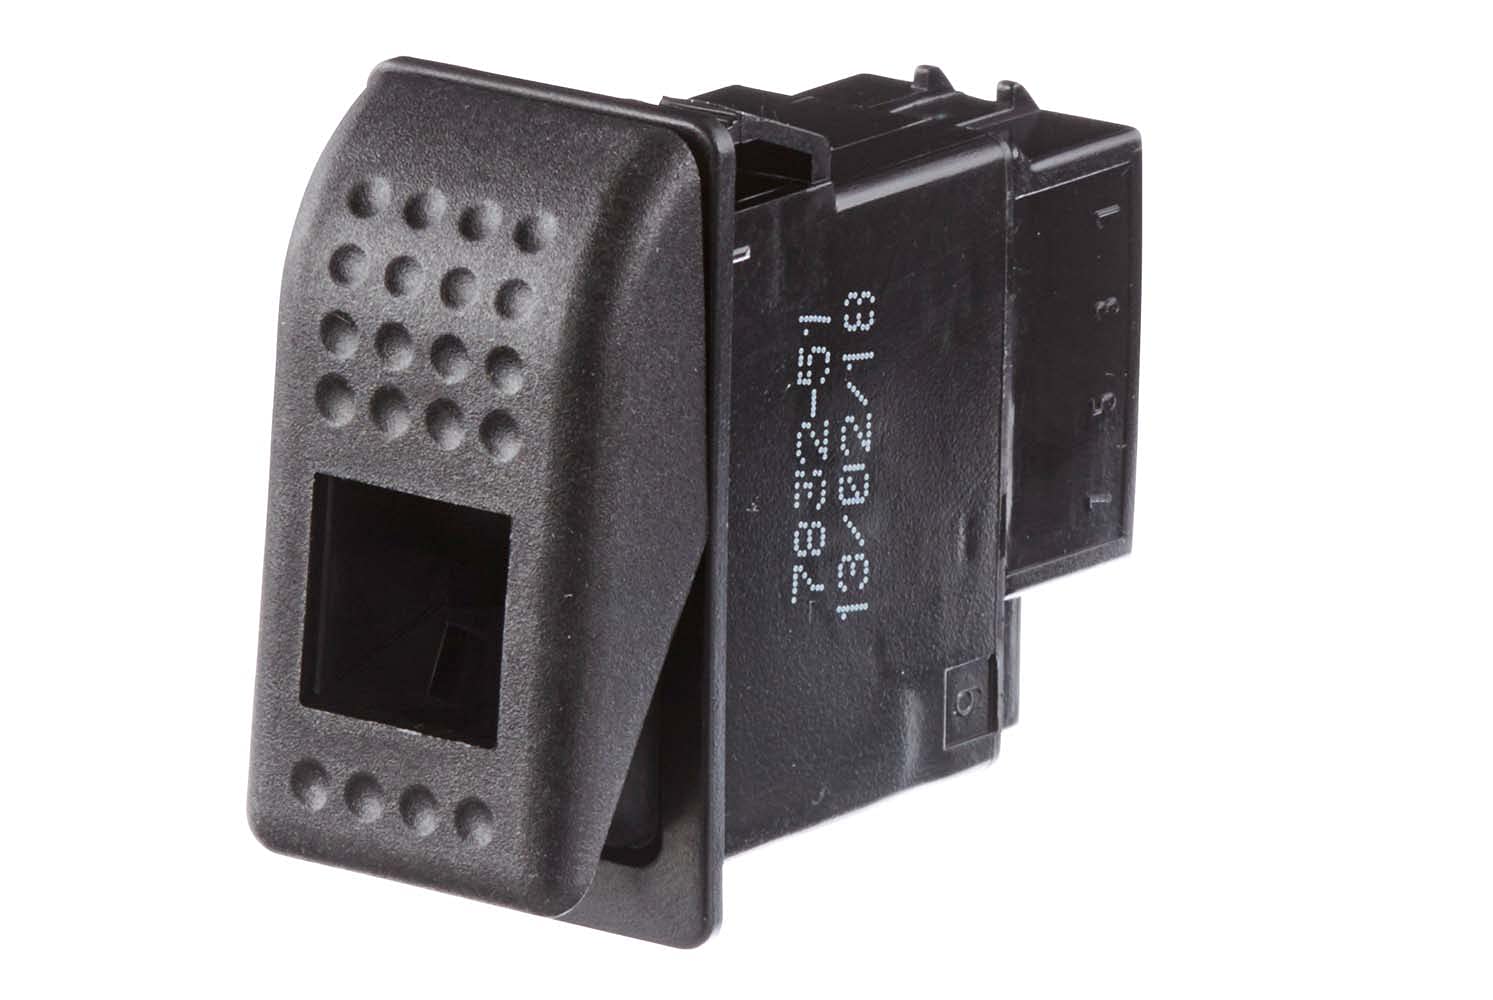 HELLA - Schalter - Kippbetätigung - Ausstattungsvar.: II+I-0 - Anschlussanzahl: 4 - ohne Komfortfunktion - 6FH 007 832-511 von Hella